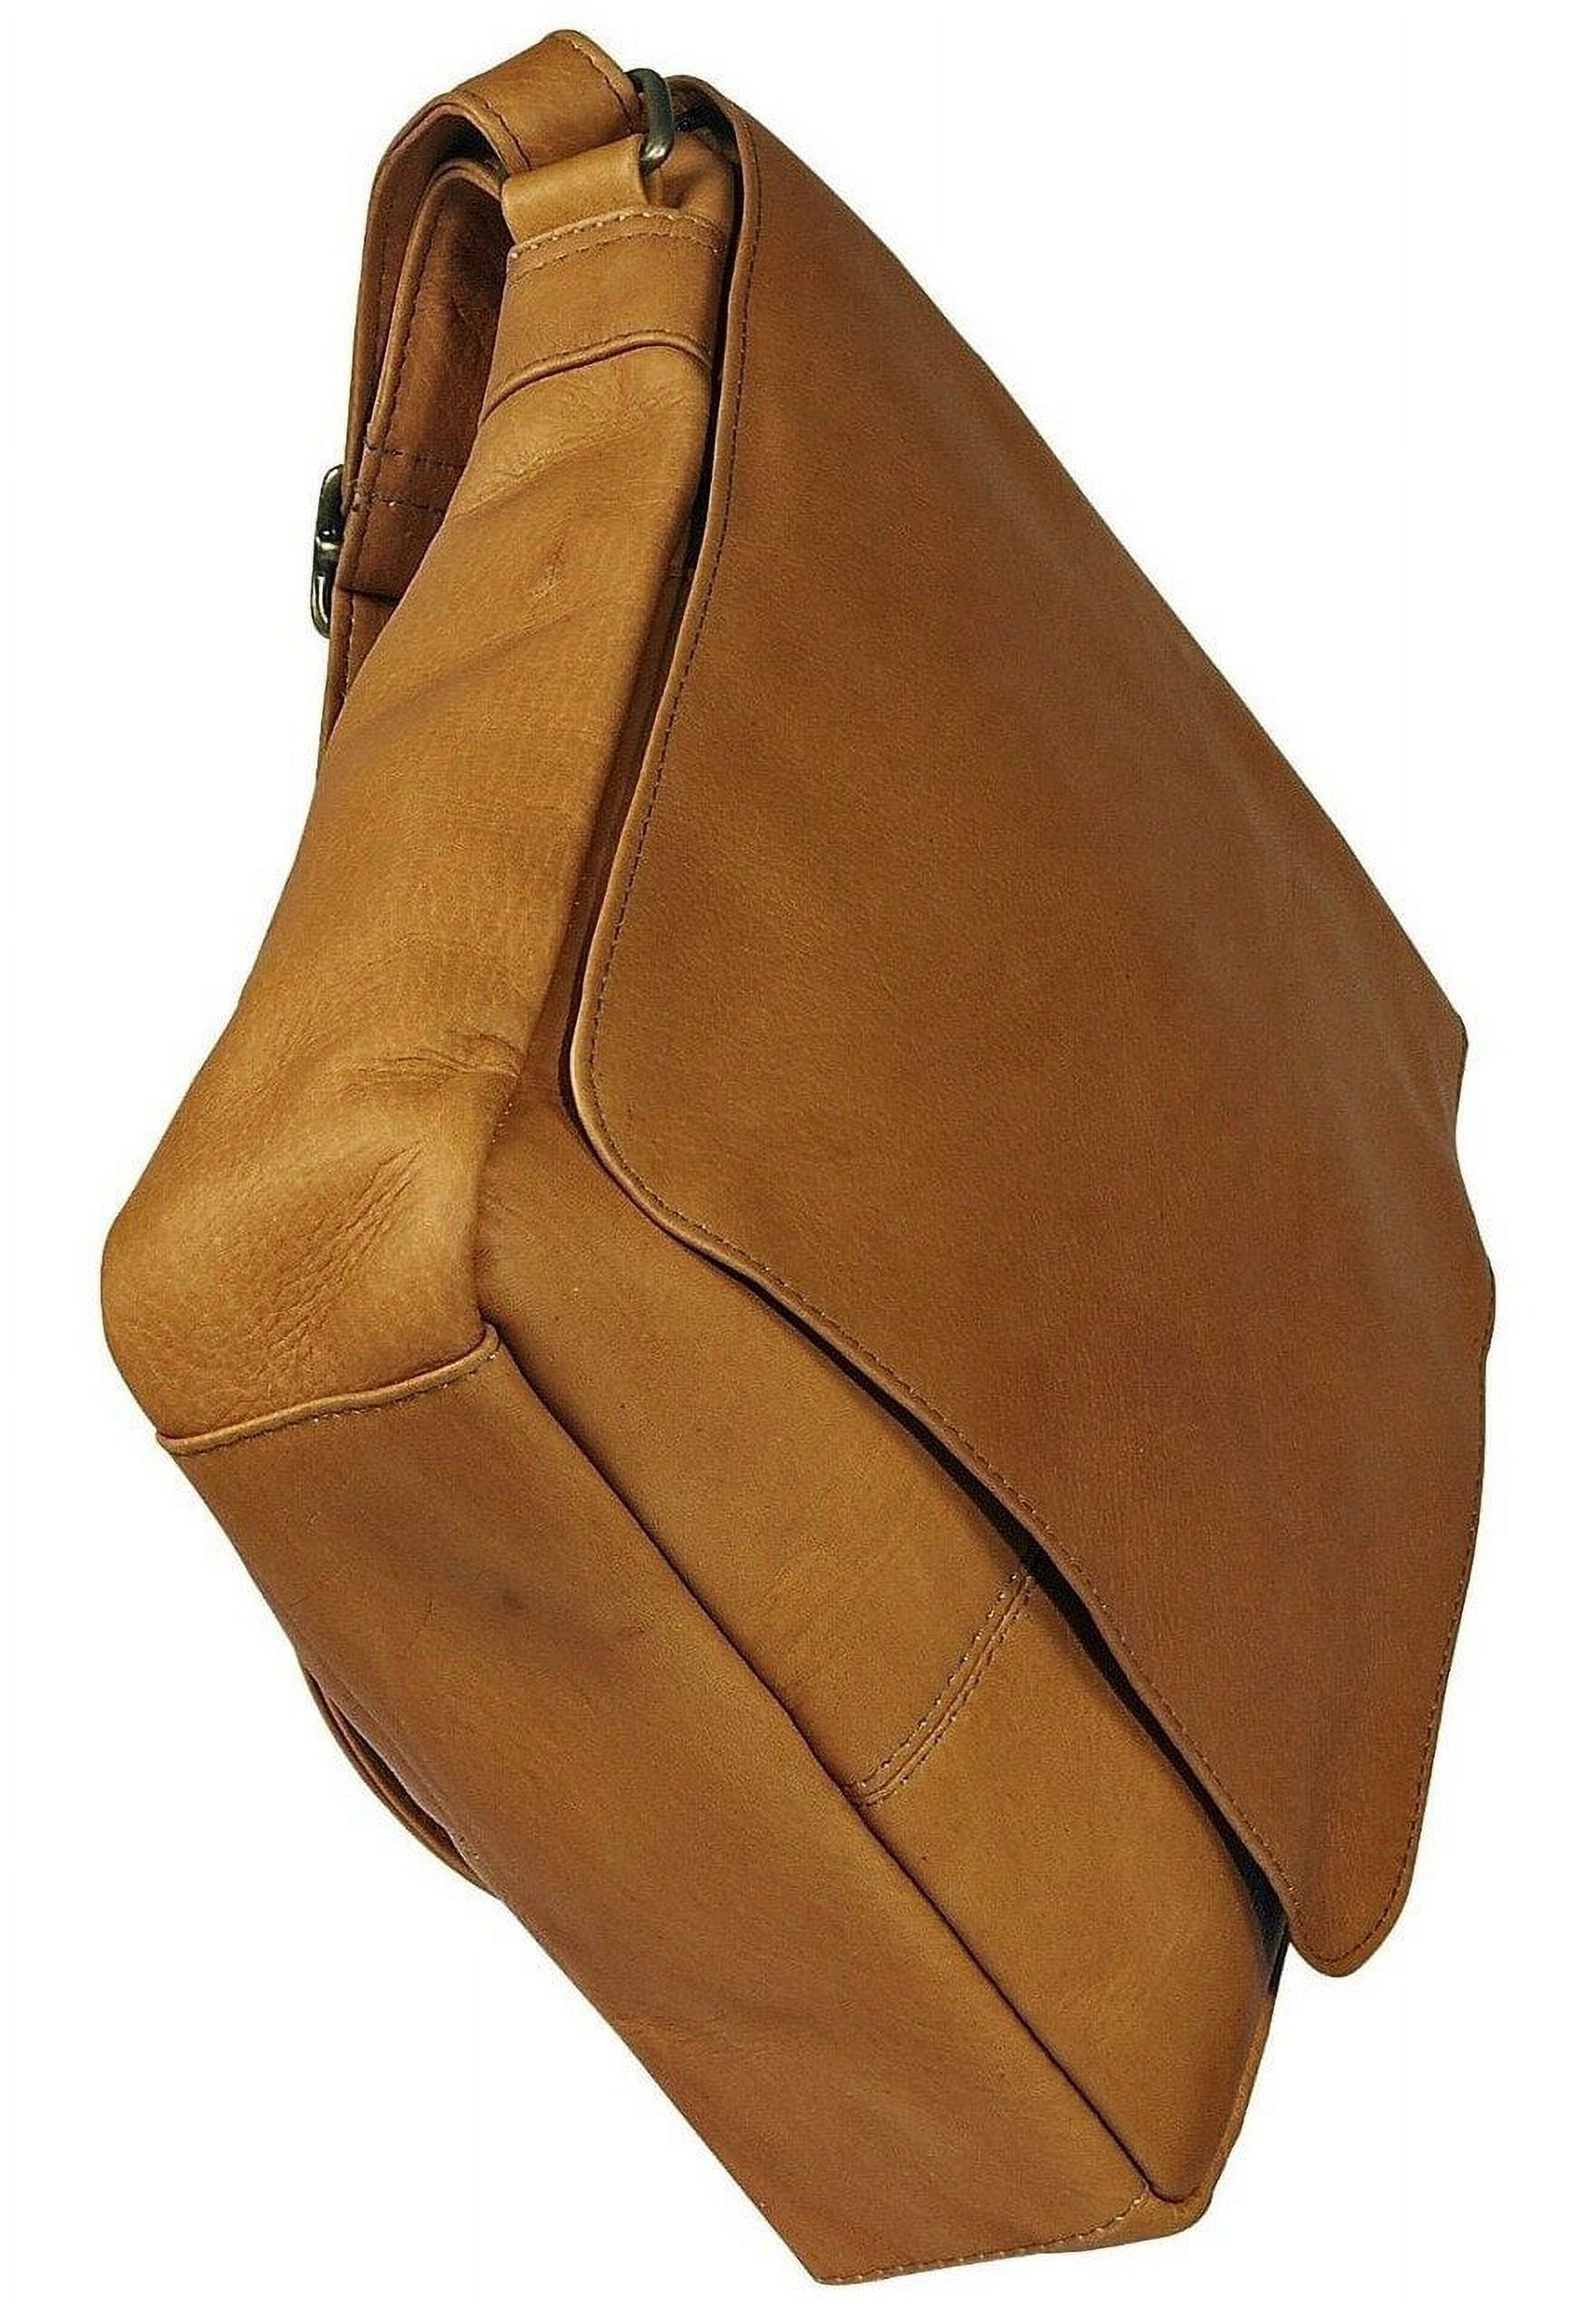 Le Donne Leather Vertical Flap Over Shoulder Bag H-149R - image 4 of 5